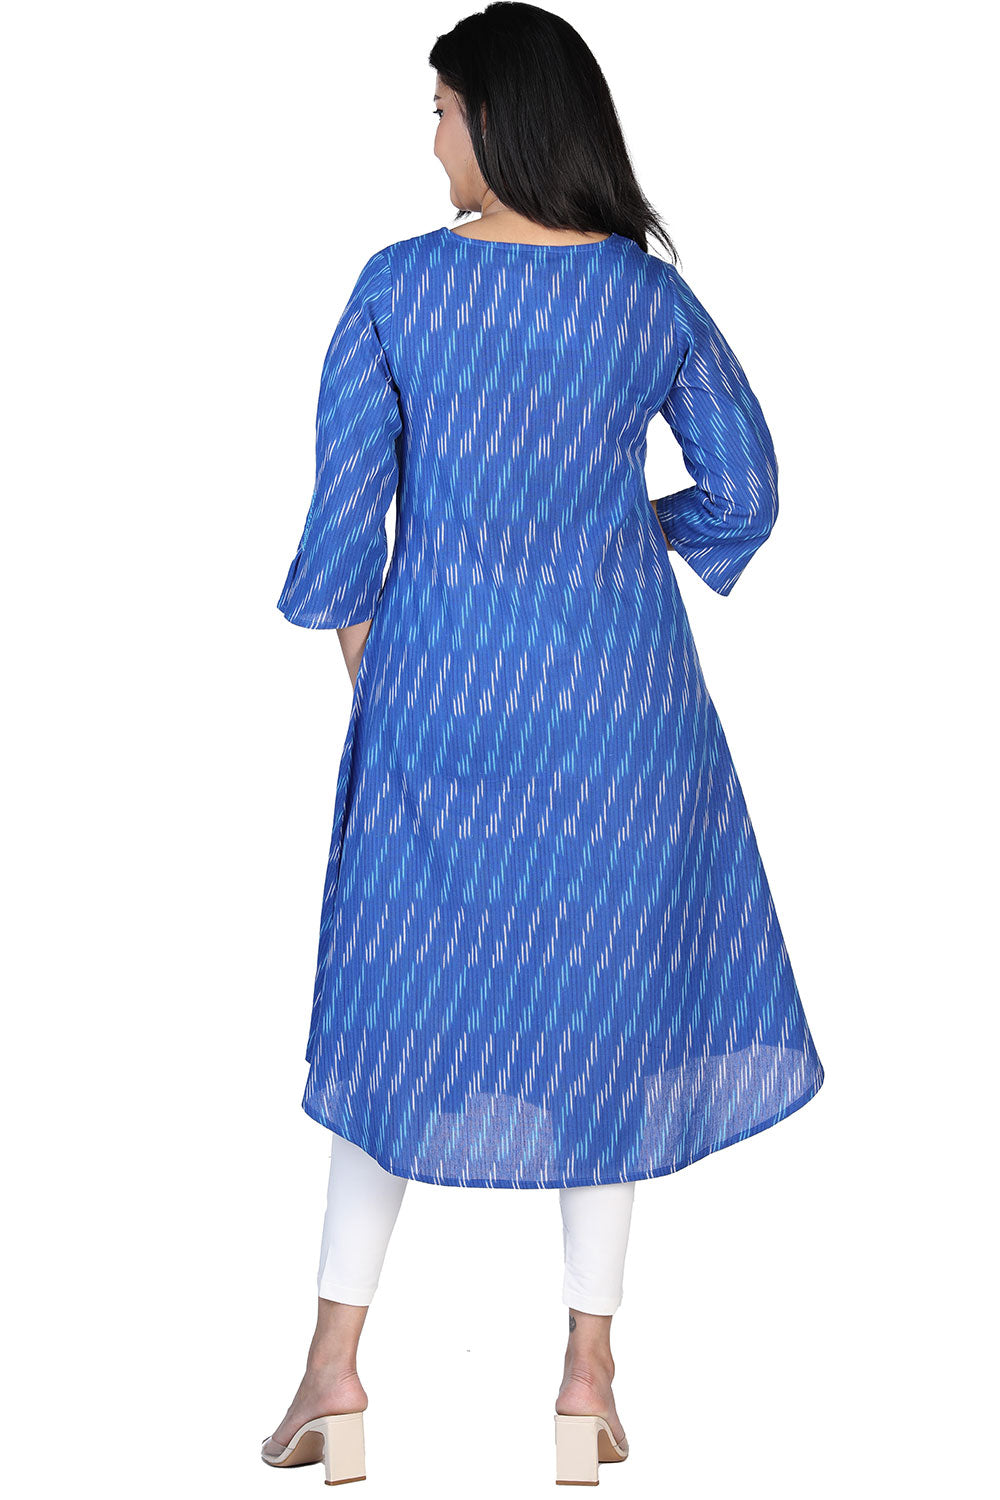 Navy blue woven kurti